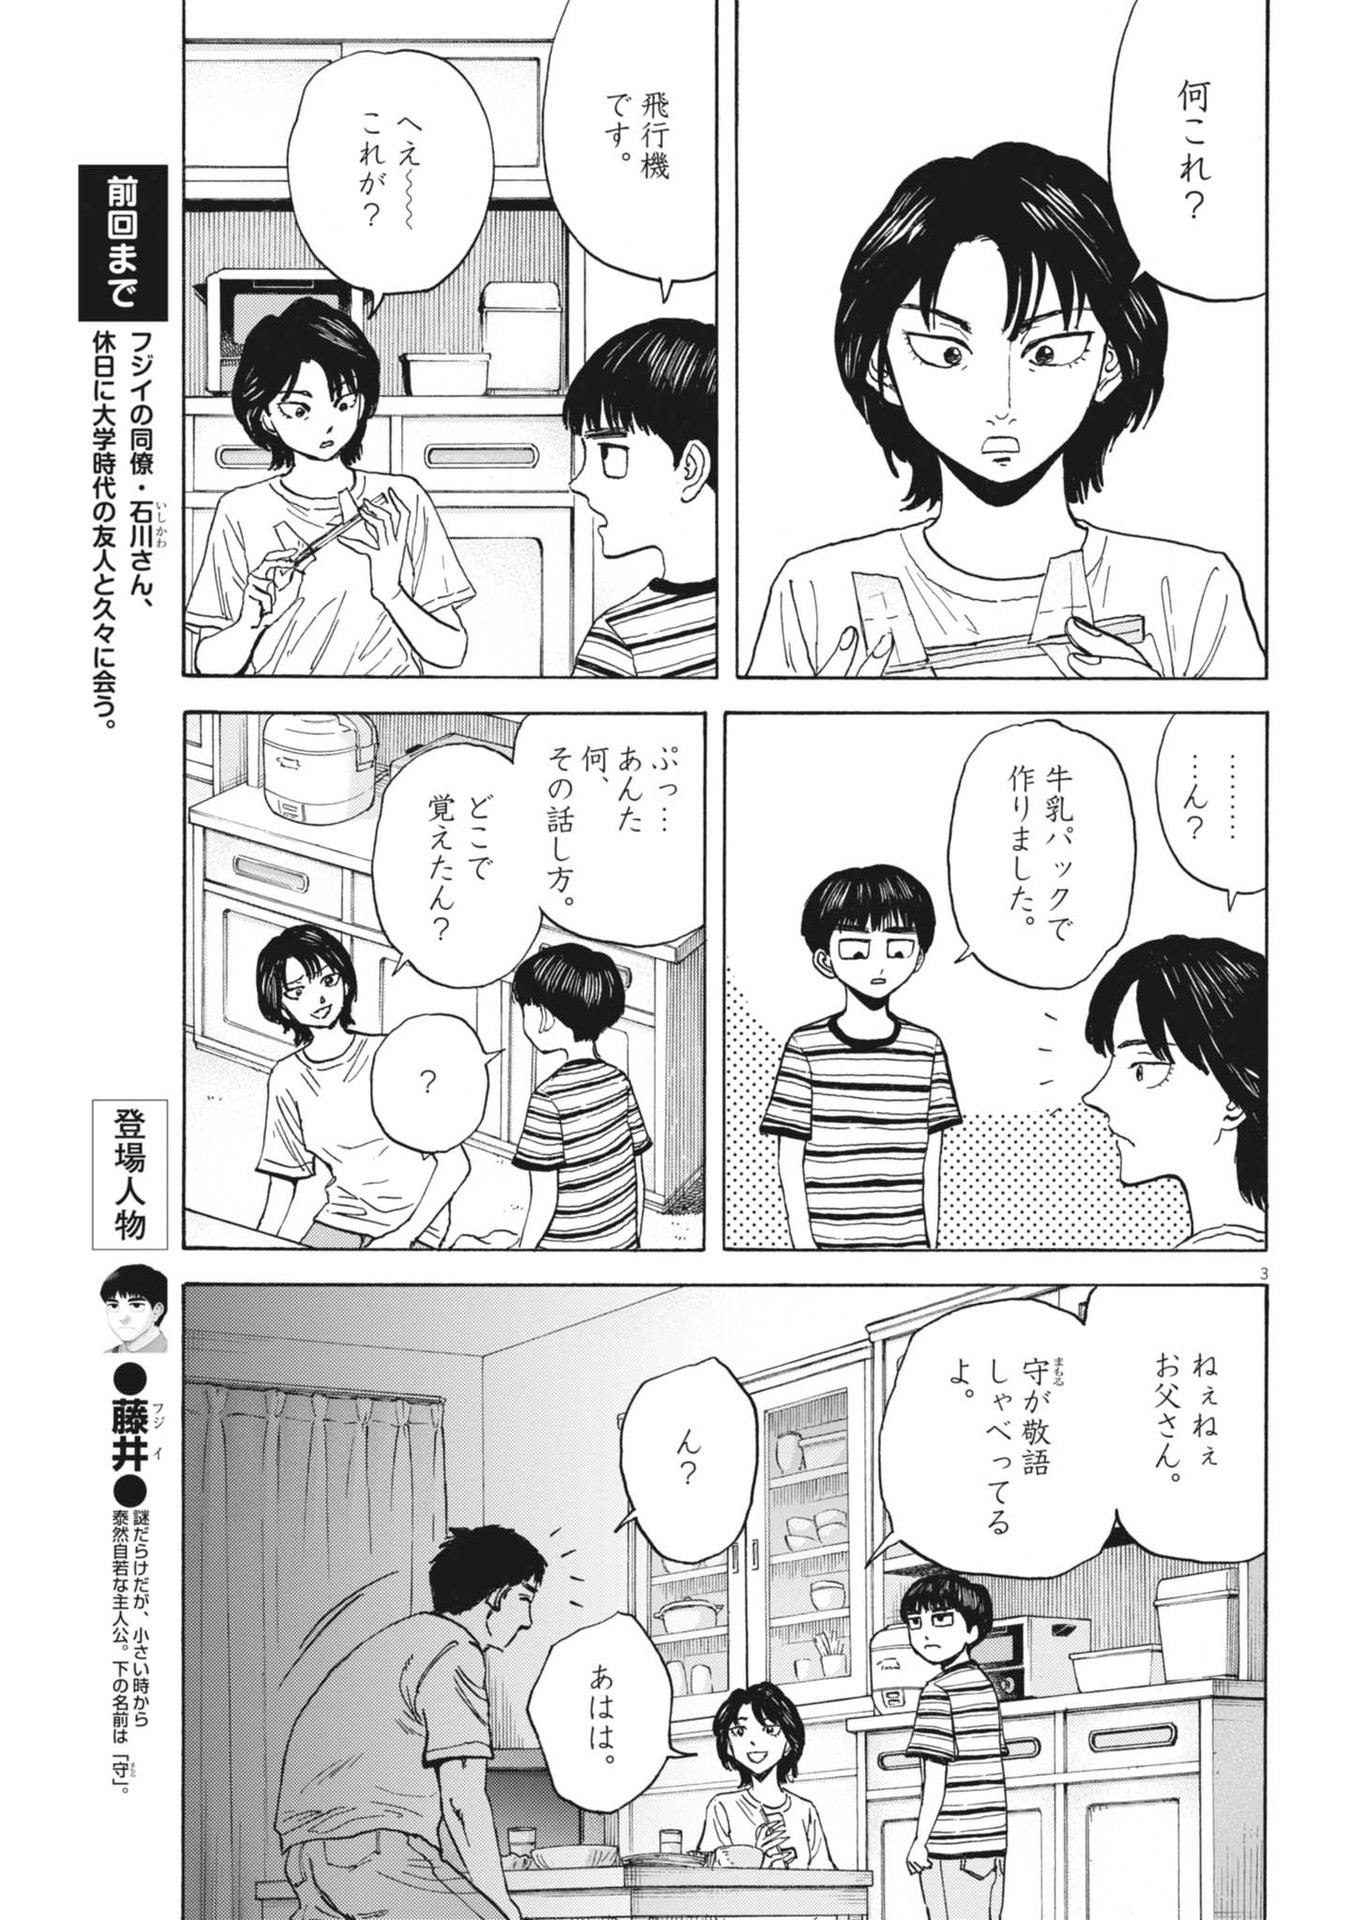 Robou no Fujii – Idai Naru Bonjin kara no Tayori - Chapter 27 - Page 3